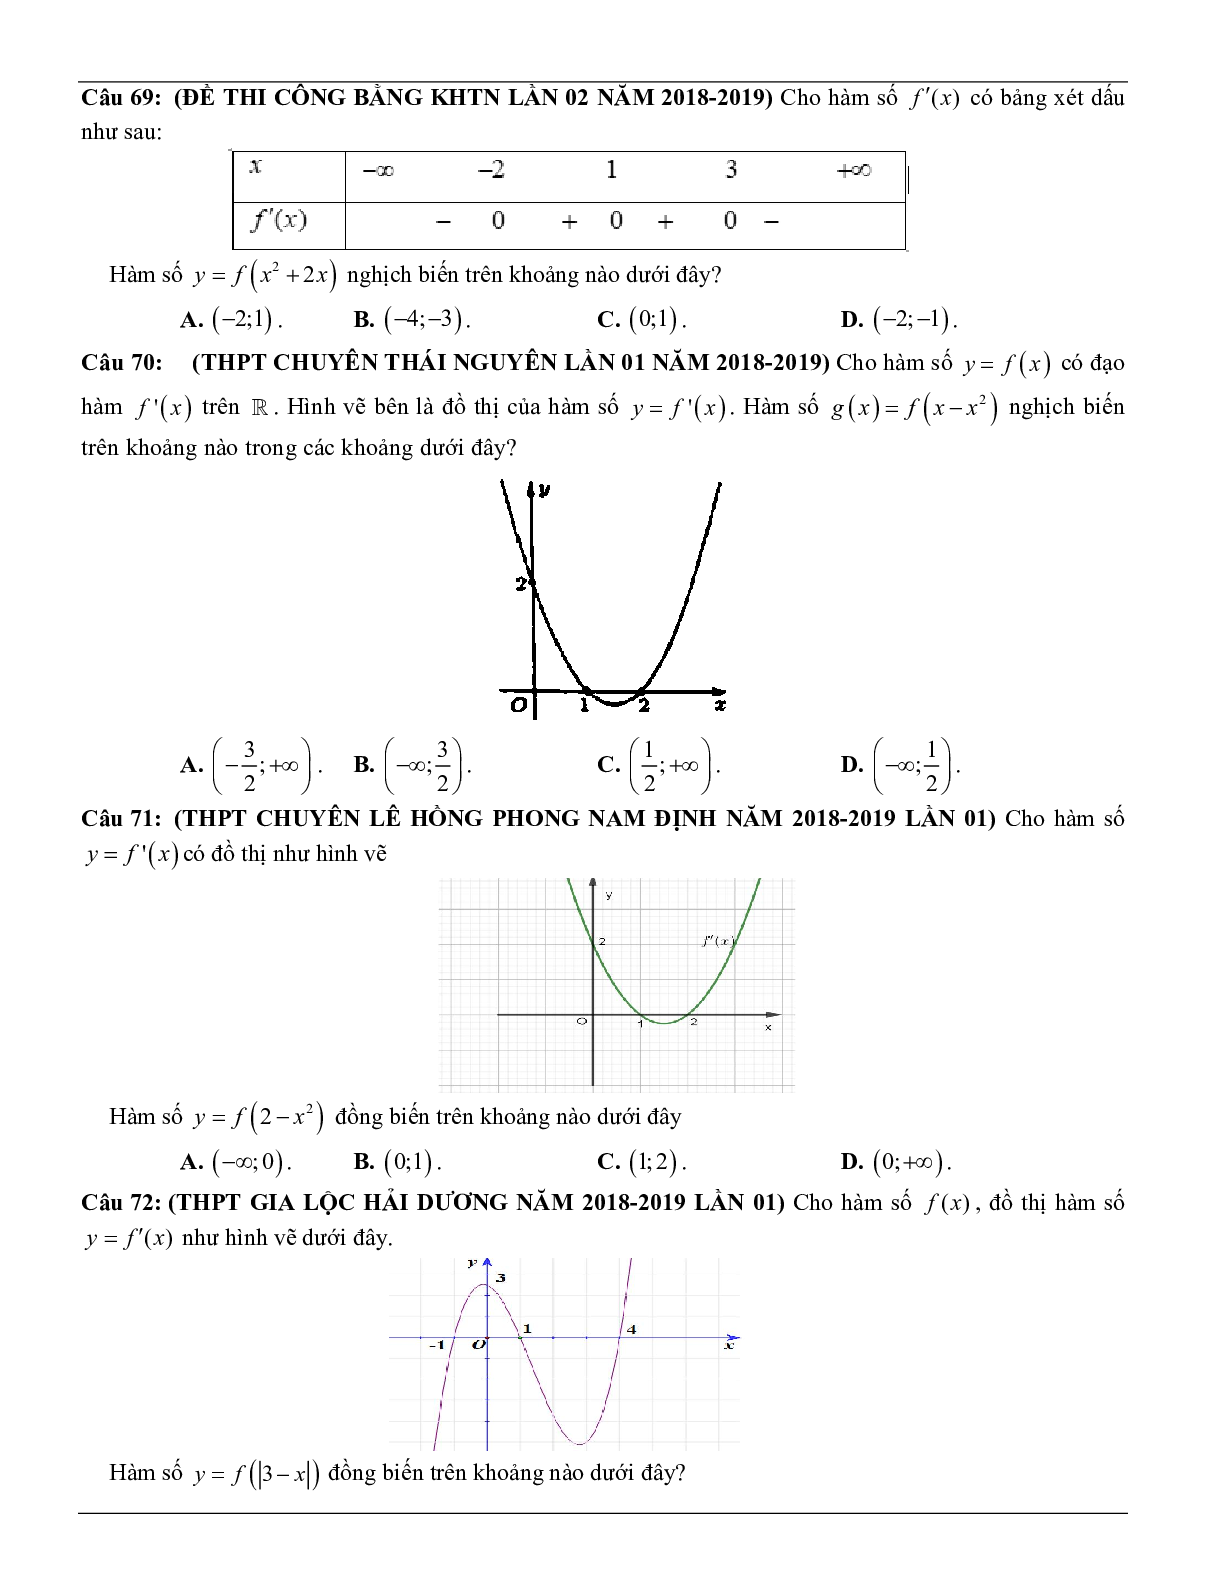 Các dạng toán về tính đơn điệu của hàm số thường gặp trong kỳ thi THPT Quốc gia (trang 10)